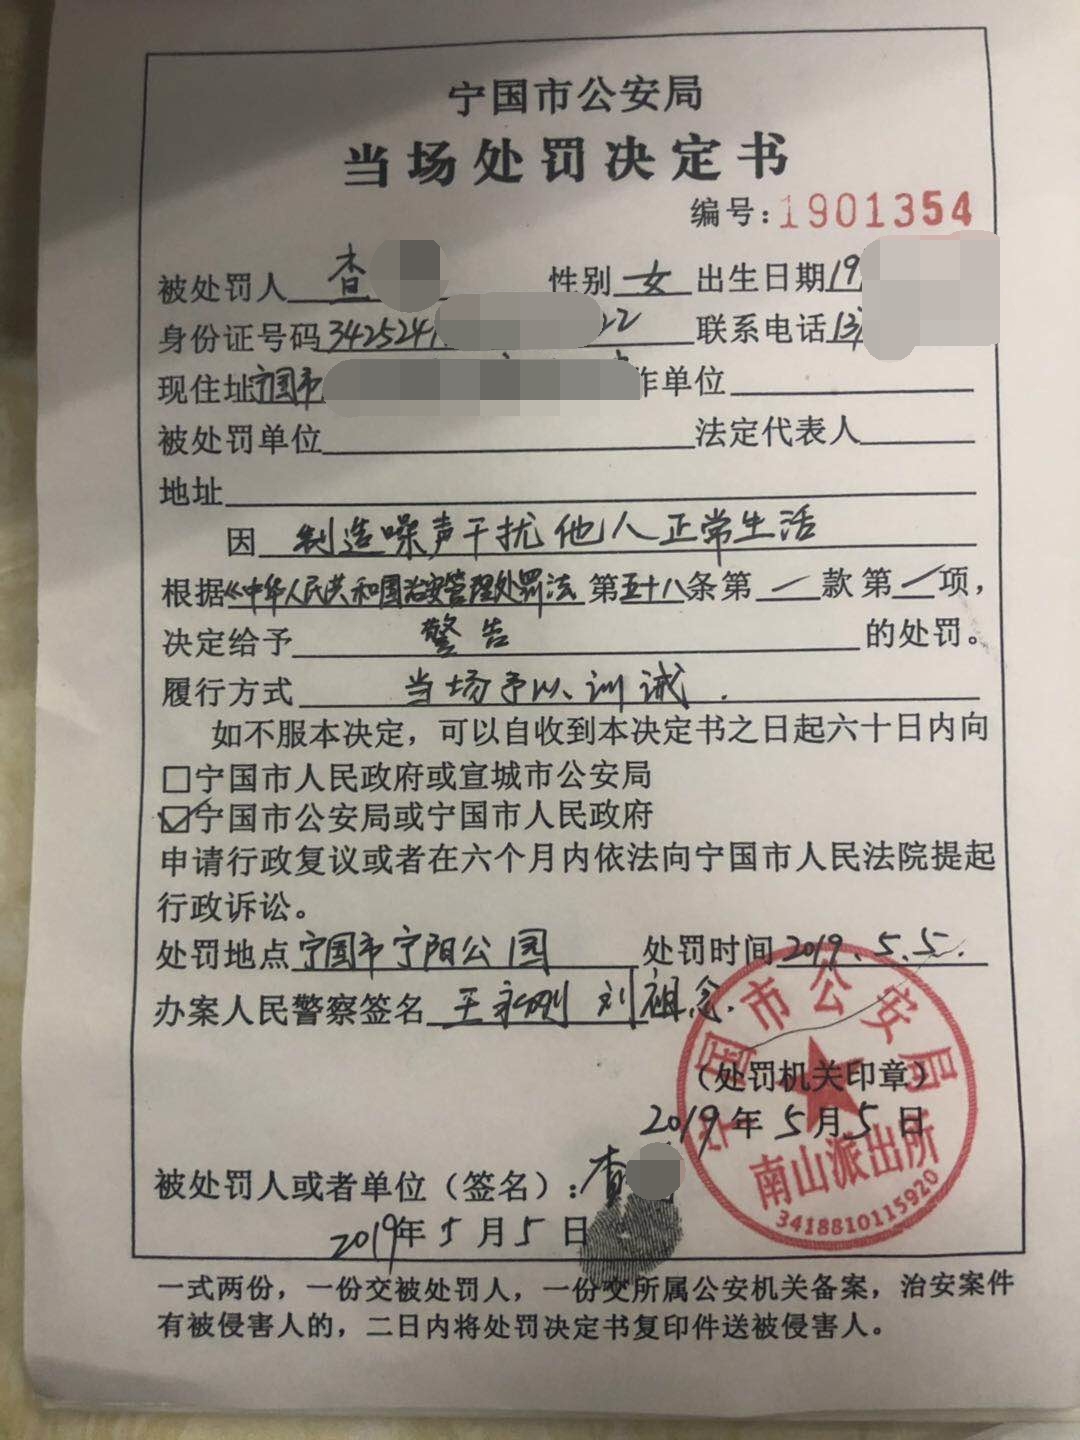 行政处罚决定书（张进溪）-阳春市人民政府门户网站